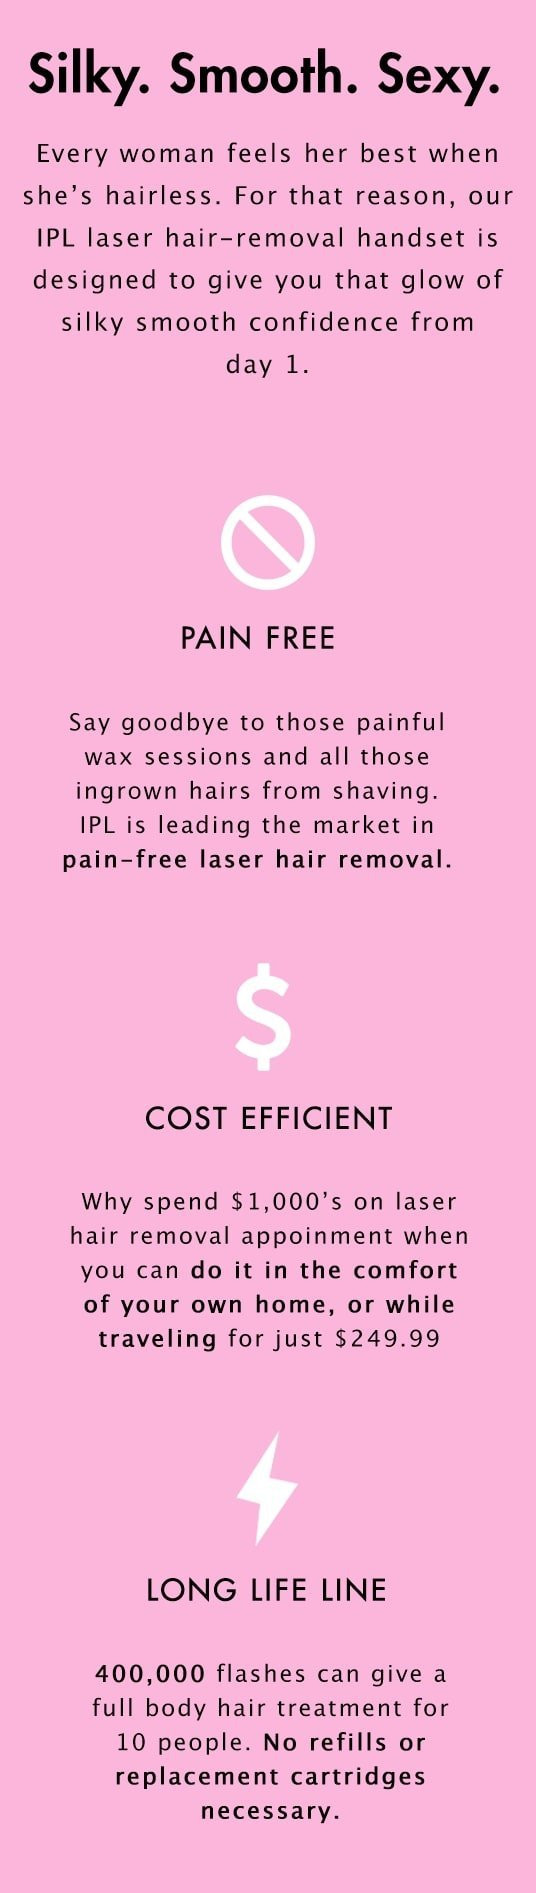 DIY Laser Hair Removal
 DIY Laser Hair Removal Handset